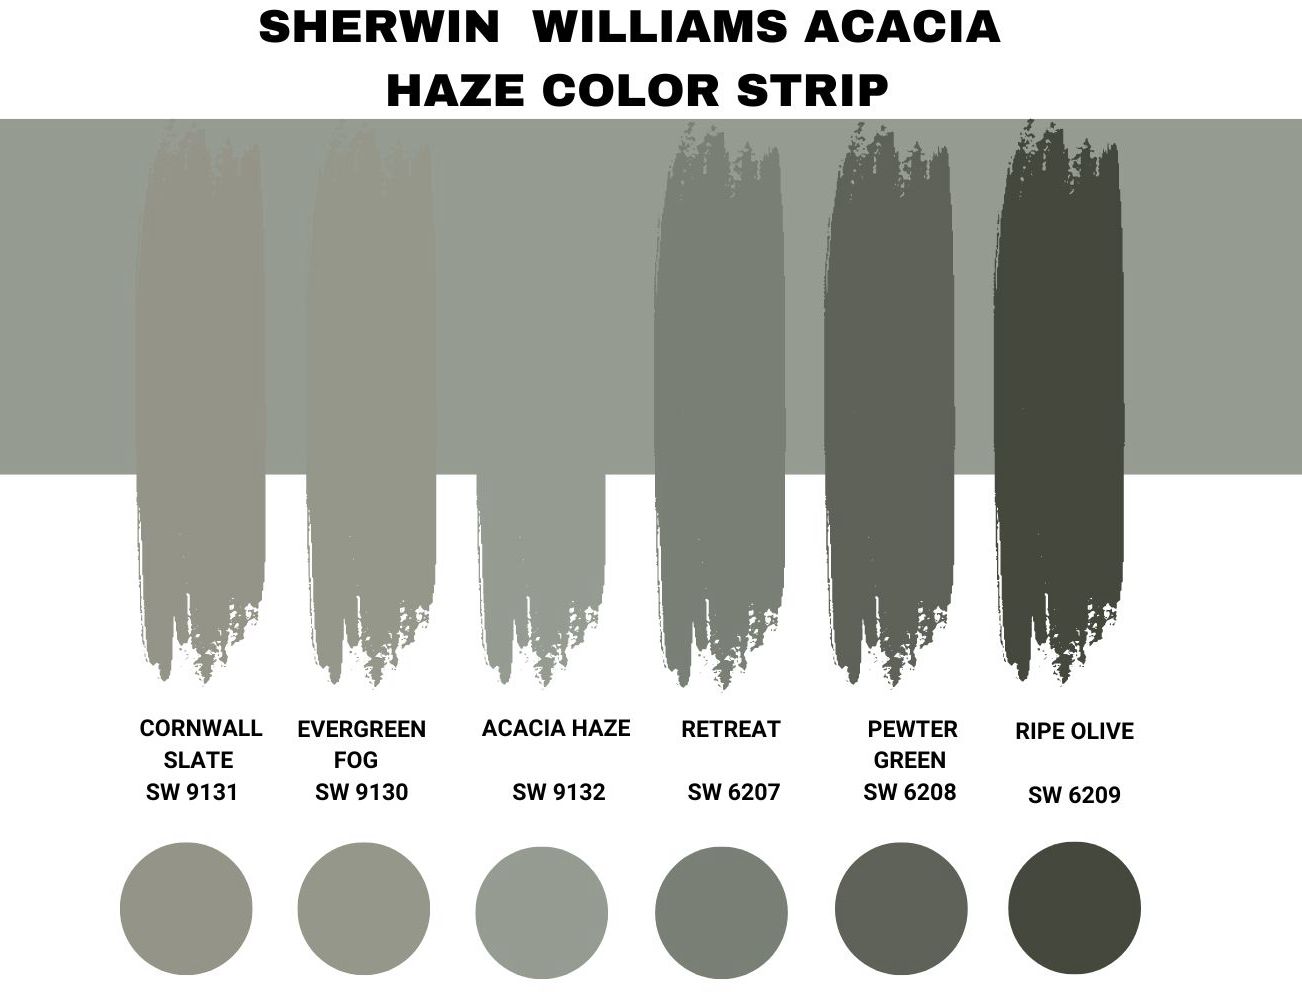 Sherwin Williams Acacia Haze Color Strip